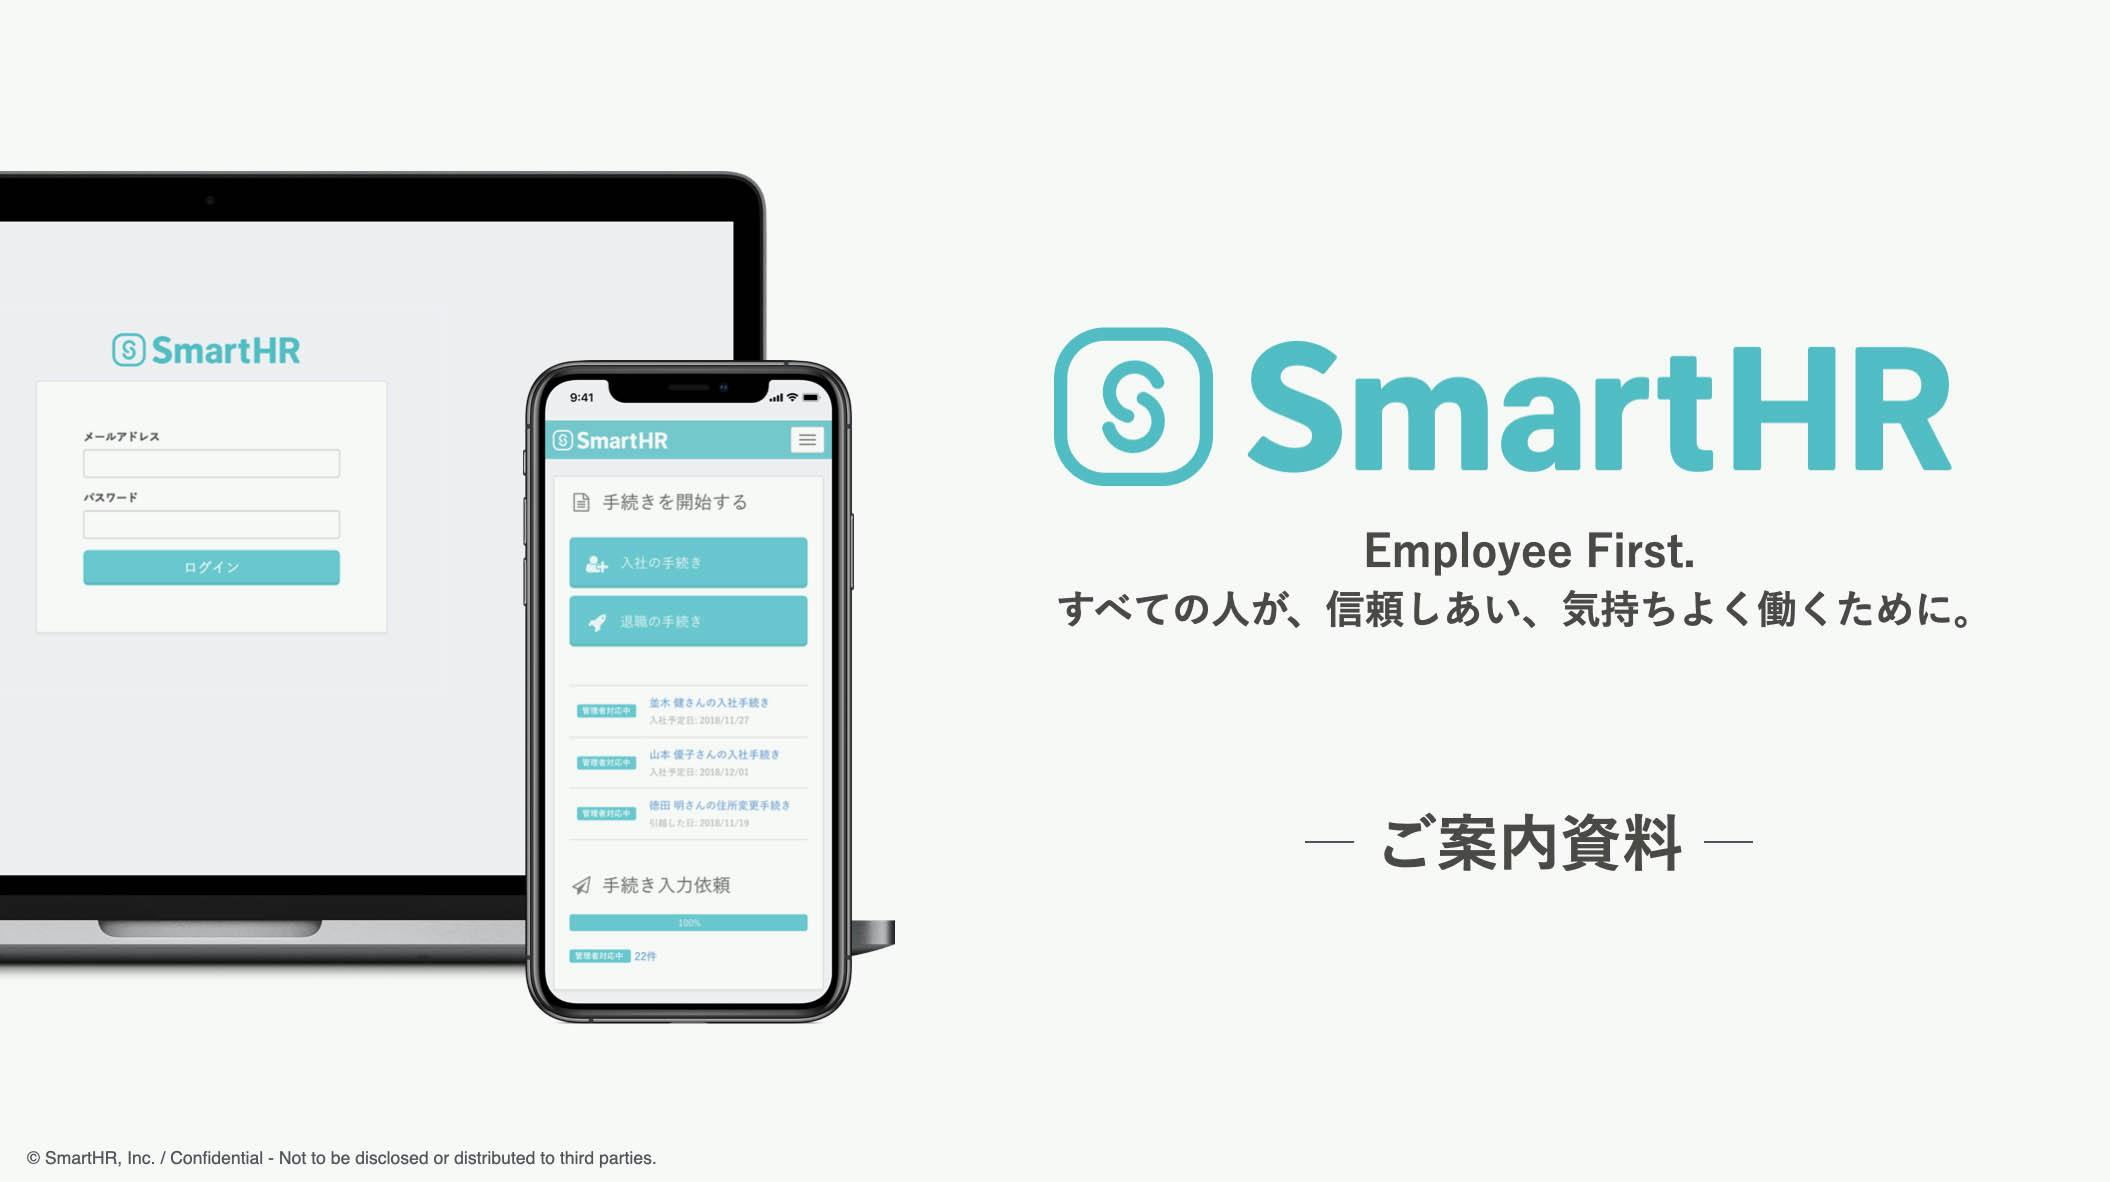 SmartHRのご案内資料の画像。SmartHRのロゴと共に「Employee First. すべての人が、信頼しあい、気持ちよく働くために。」と表紙に書かれている。左手にはSmartHRのPC画面とスマートフォン画面が並んでいる。